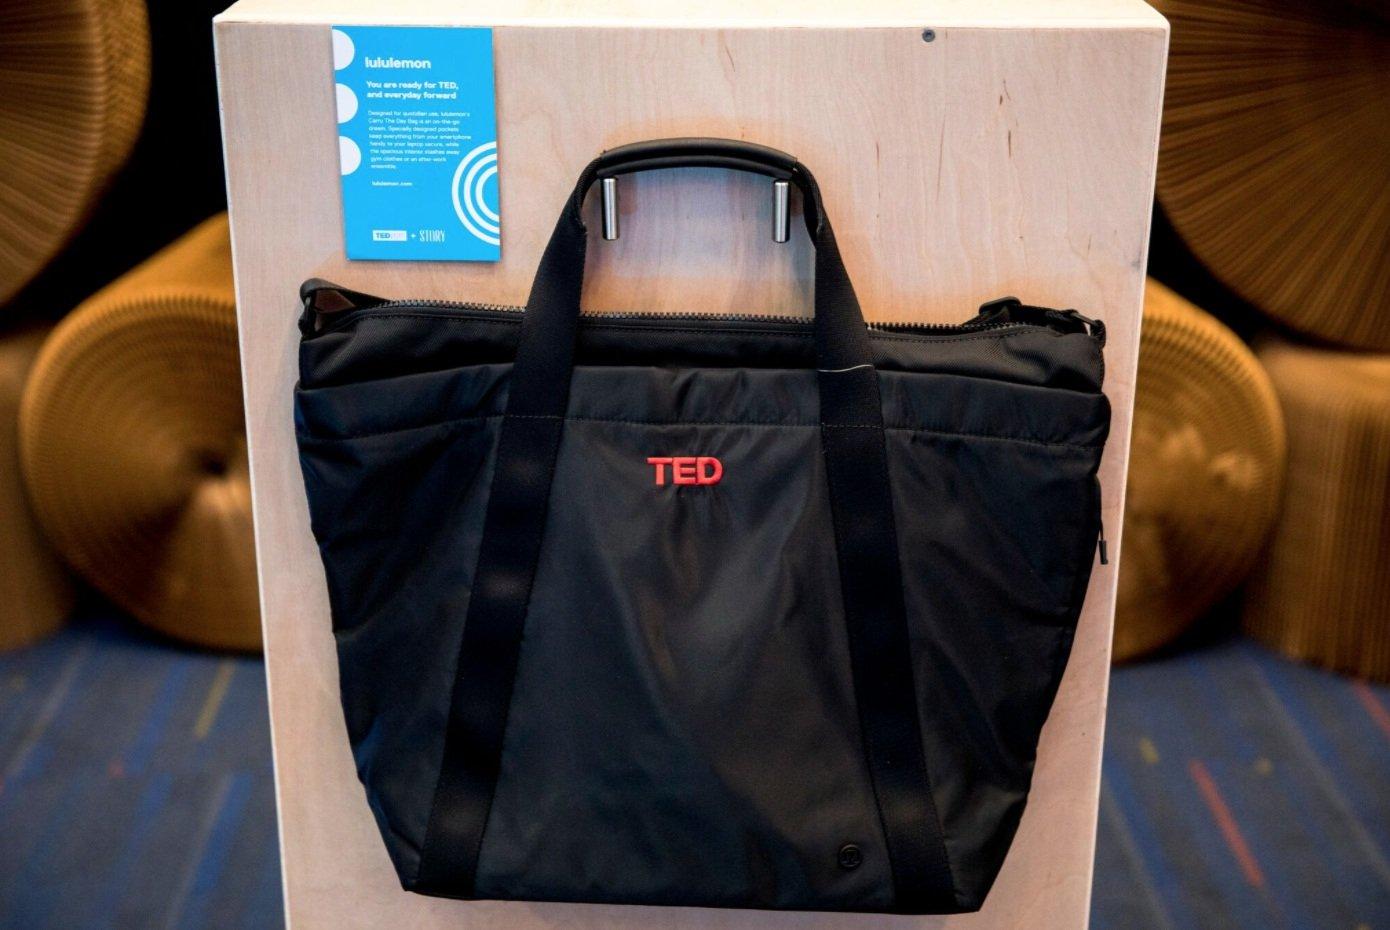 TED: ecco cosa contiene la “gift bag” consegnata ai partecipanti”__consegnata_ai_partecipanti_4